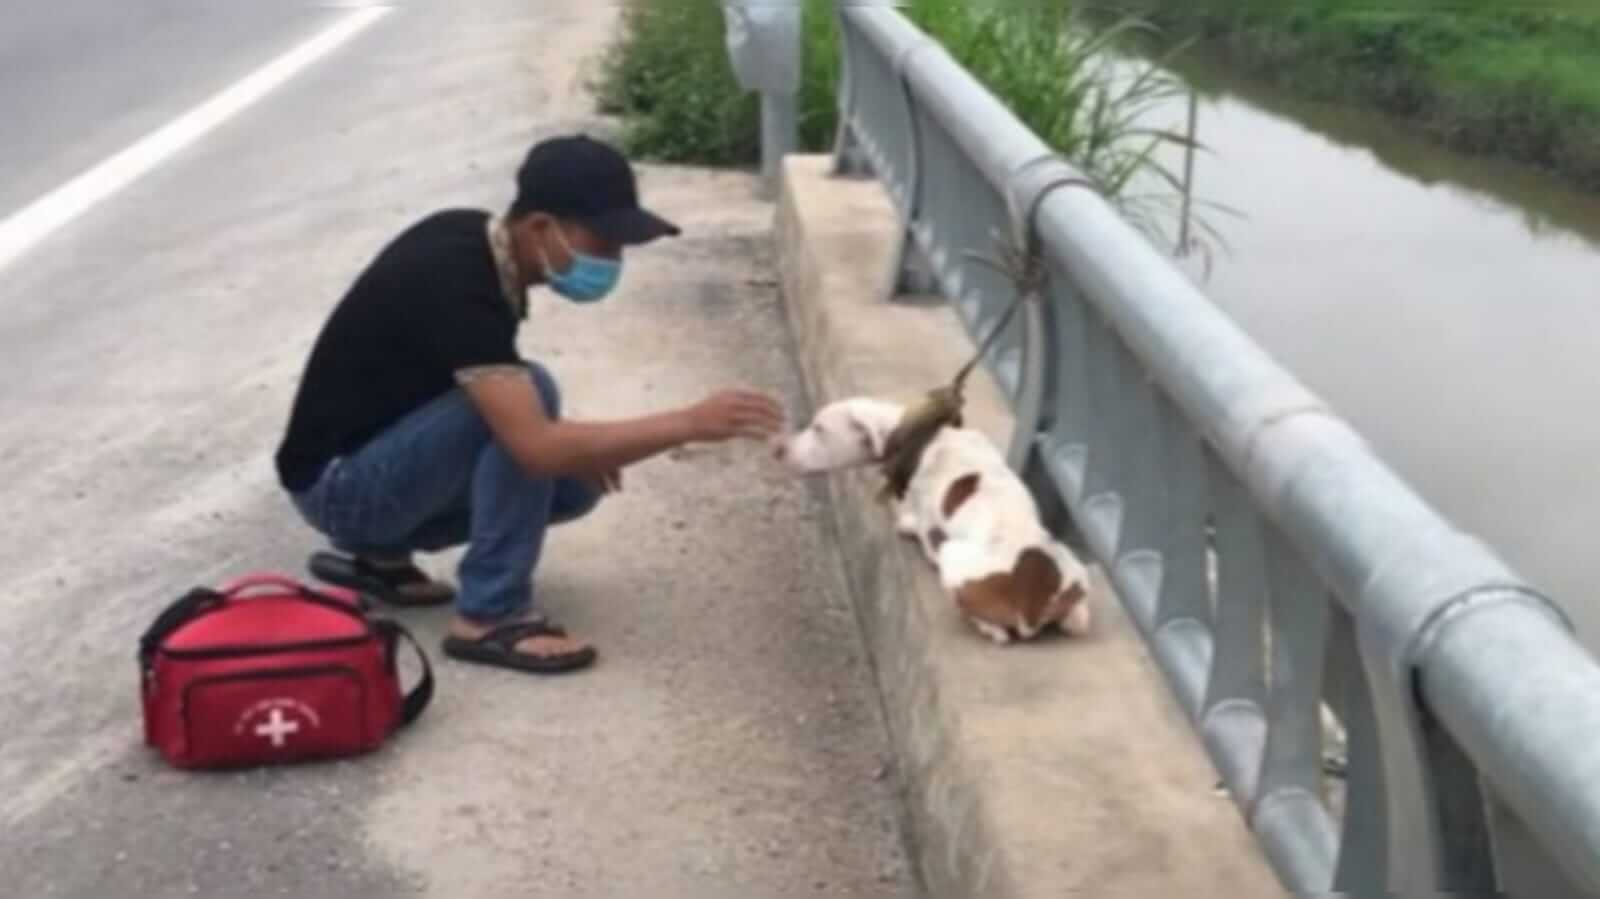 Cachorro sendo resgatado de ponte